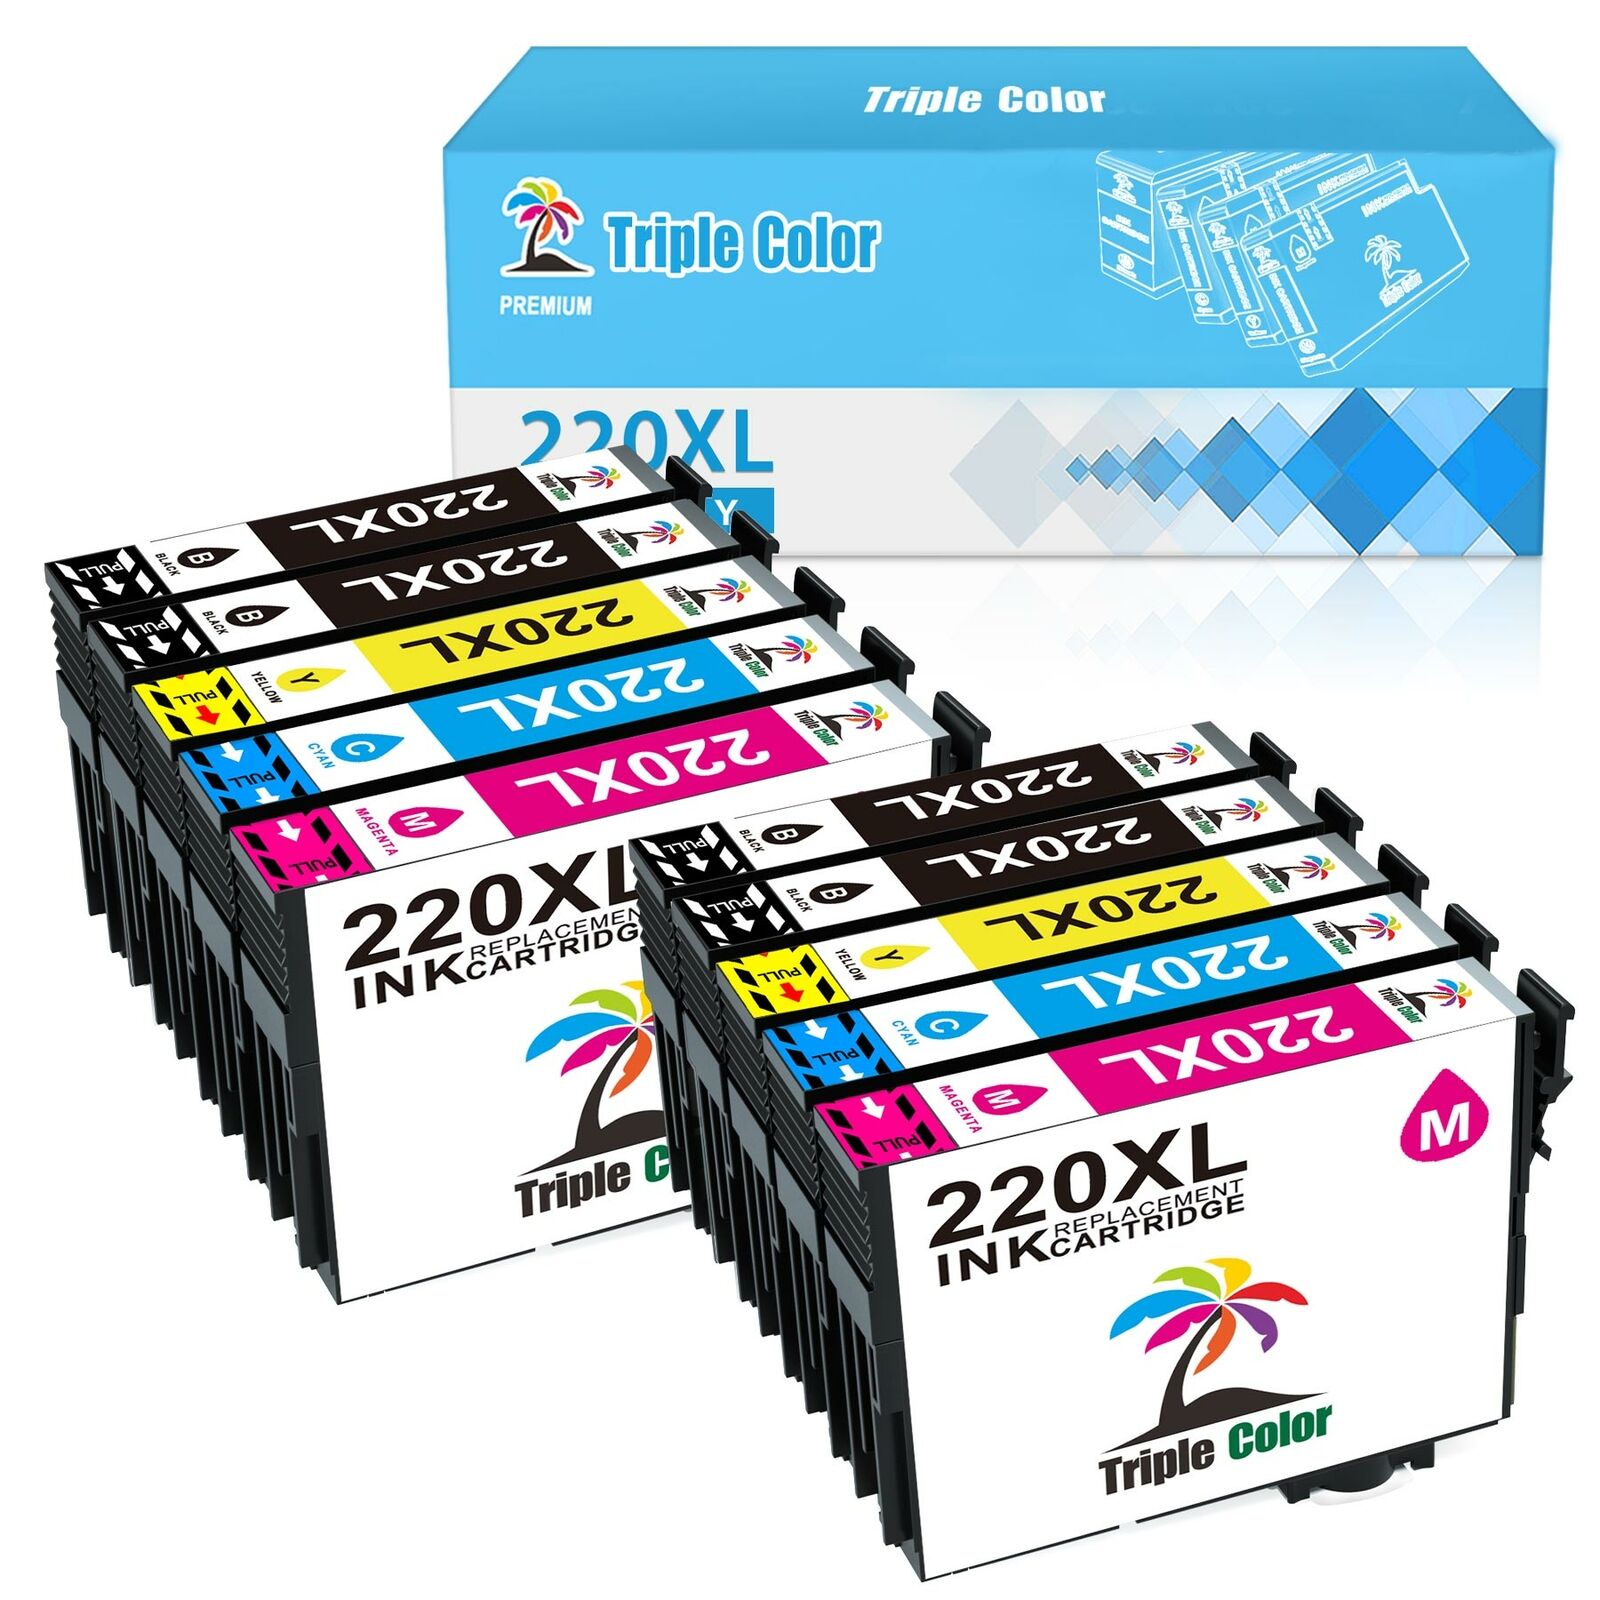 10x 220XL Ink Cartridges for Epson WorkForce WF-2660 WF-2750 WF-2760 WF-2630